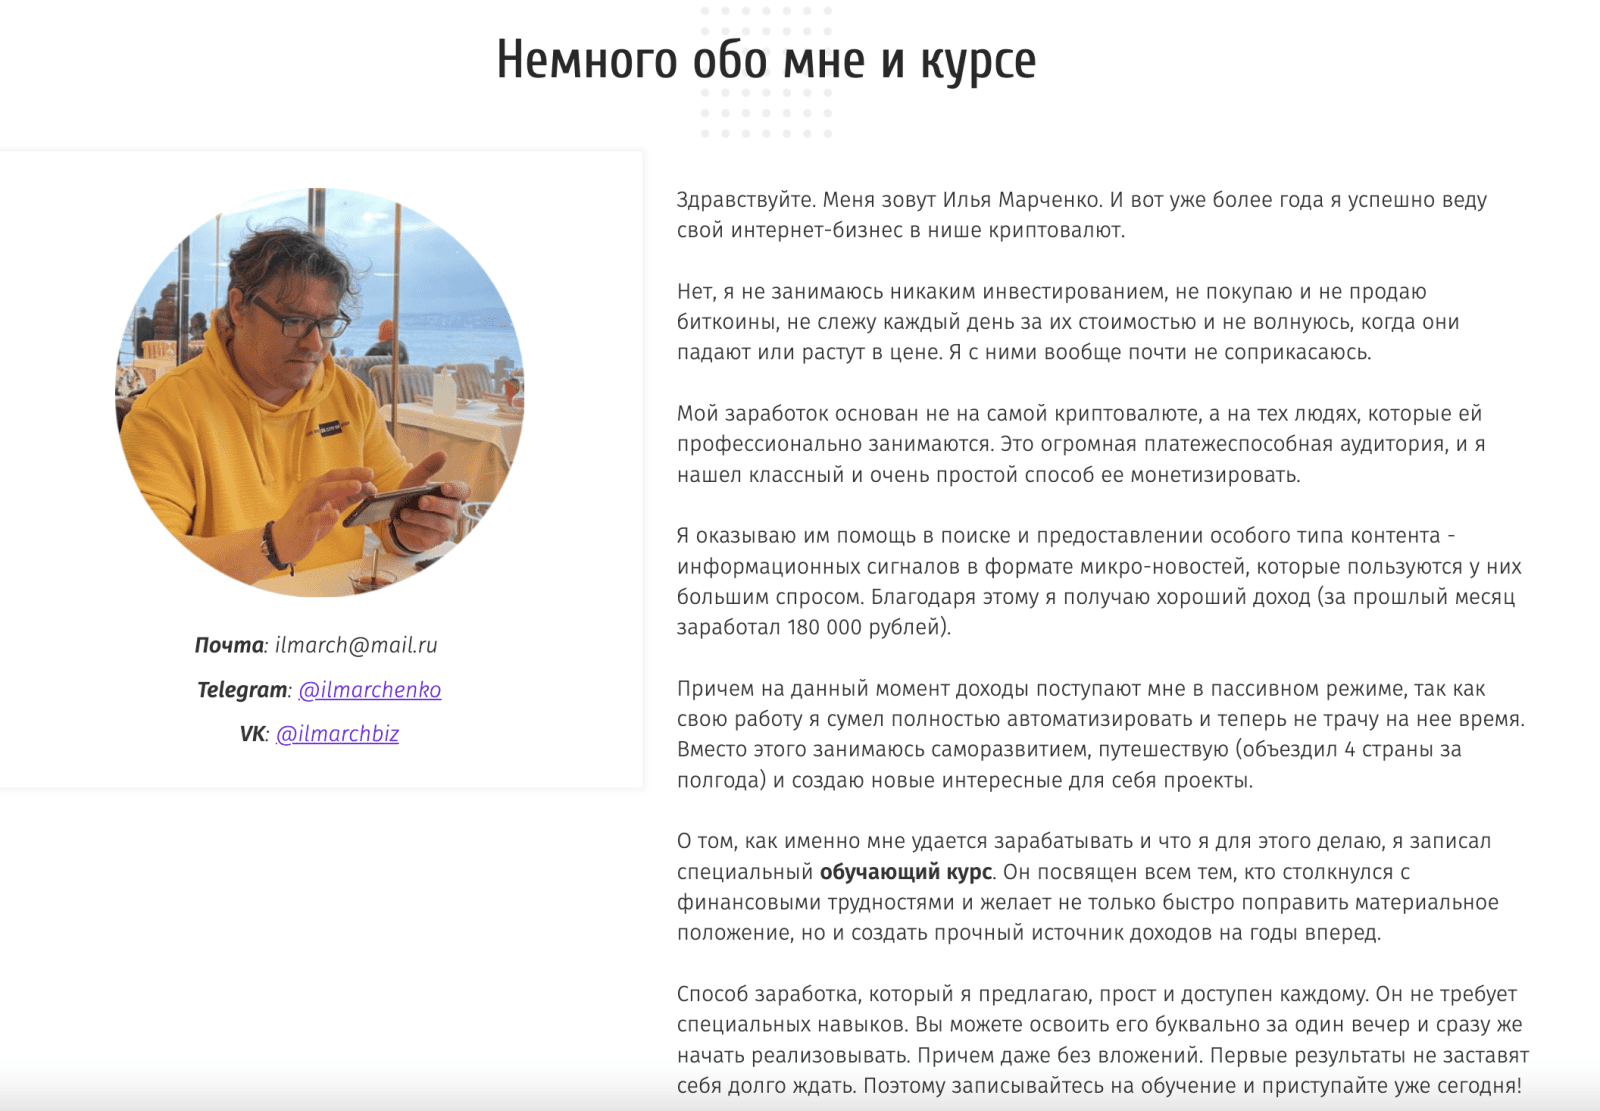 Изображение [CRYPTO NEWS] Илья Марченко - Как зарабатывать от 100 000 рублей в месяц, размещая простые микро-новости (2022) в посте 270230